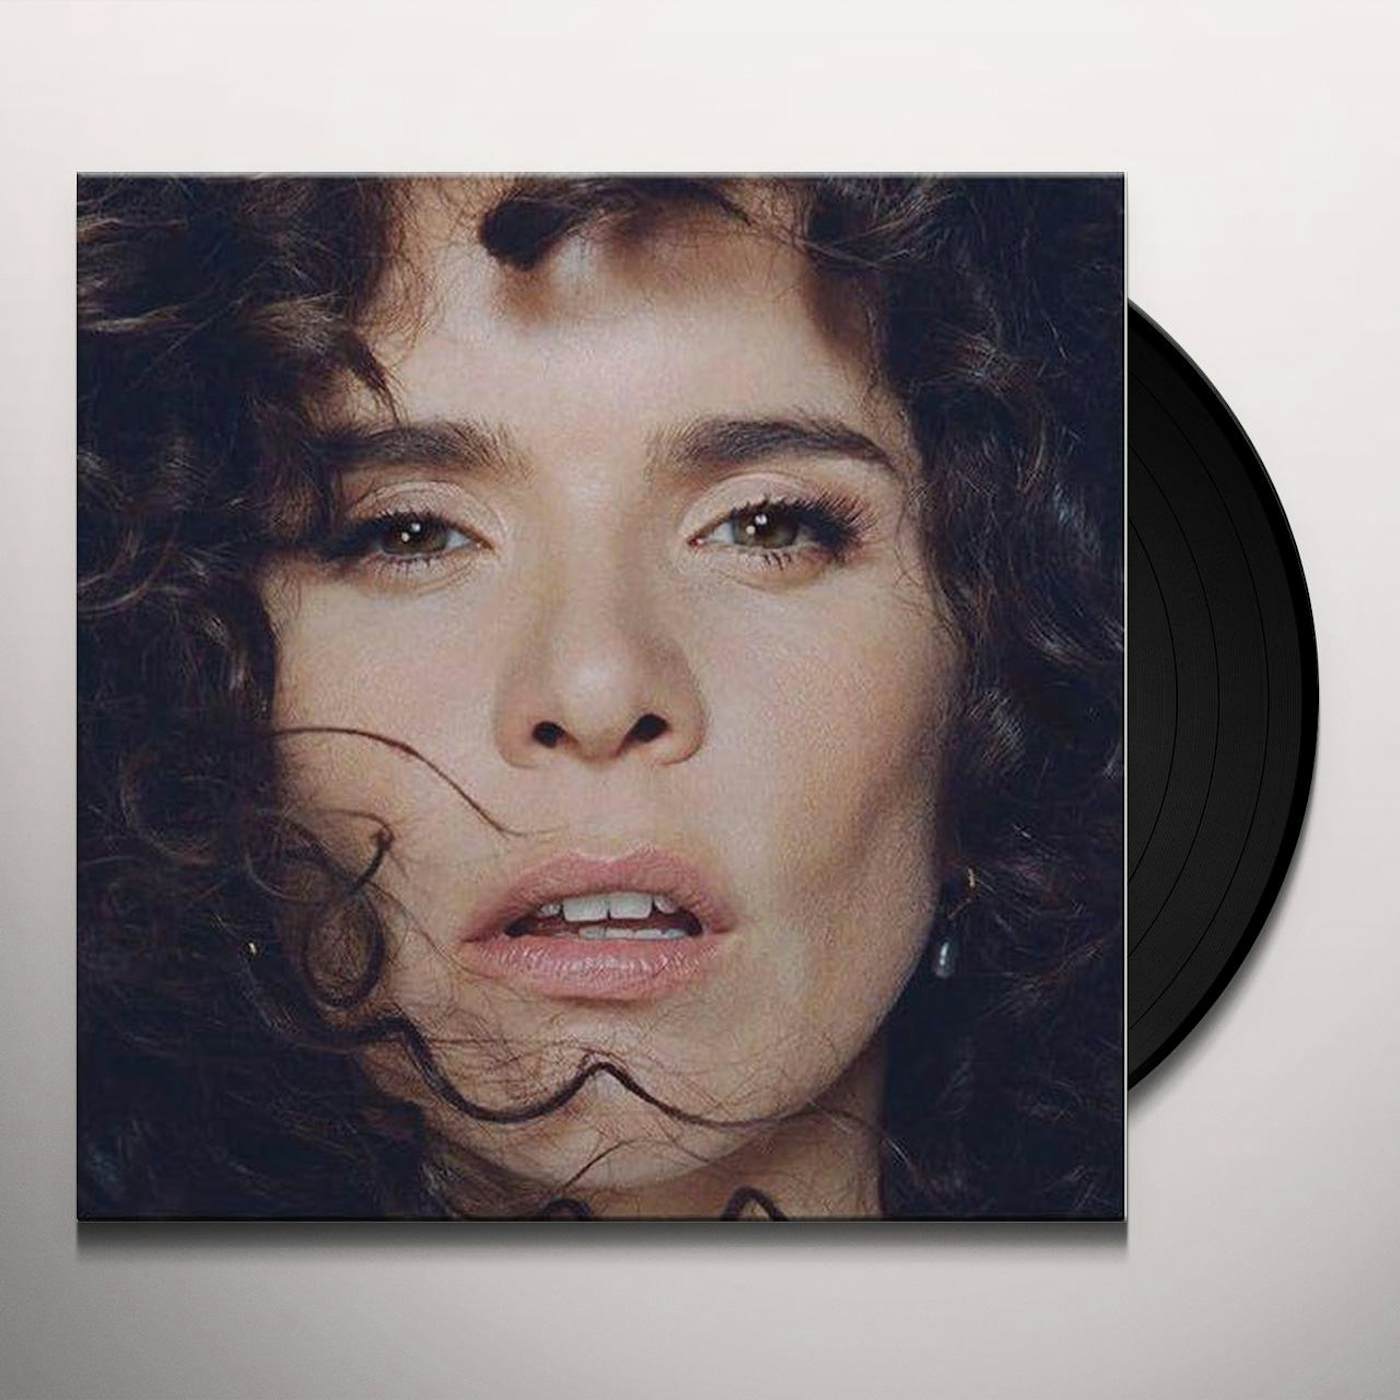 Paloma Faith Glorification Of Sadness Vinyl Record